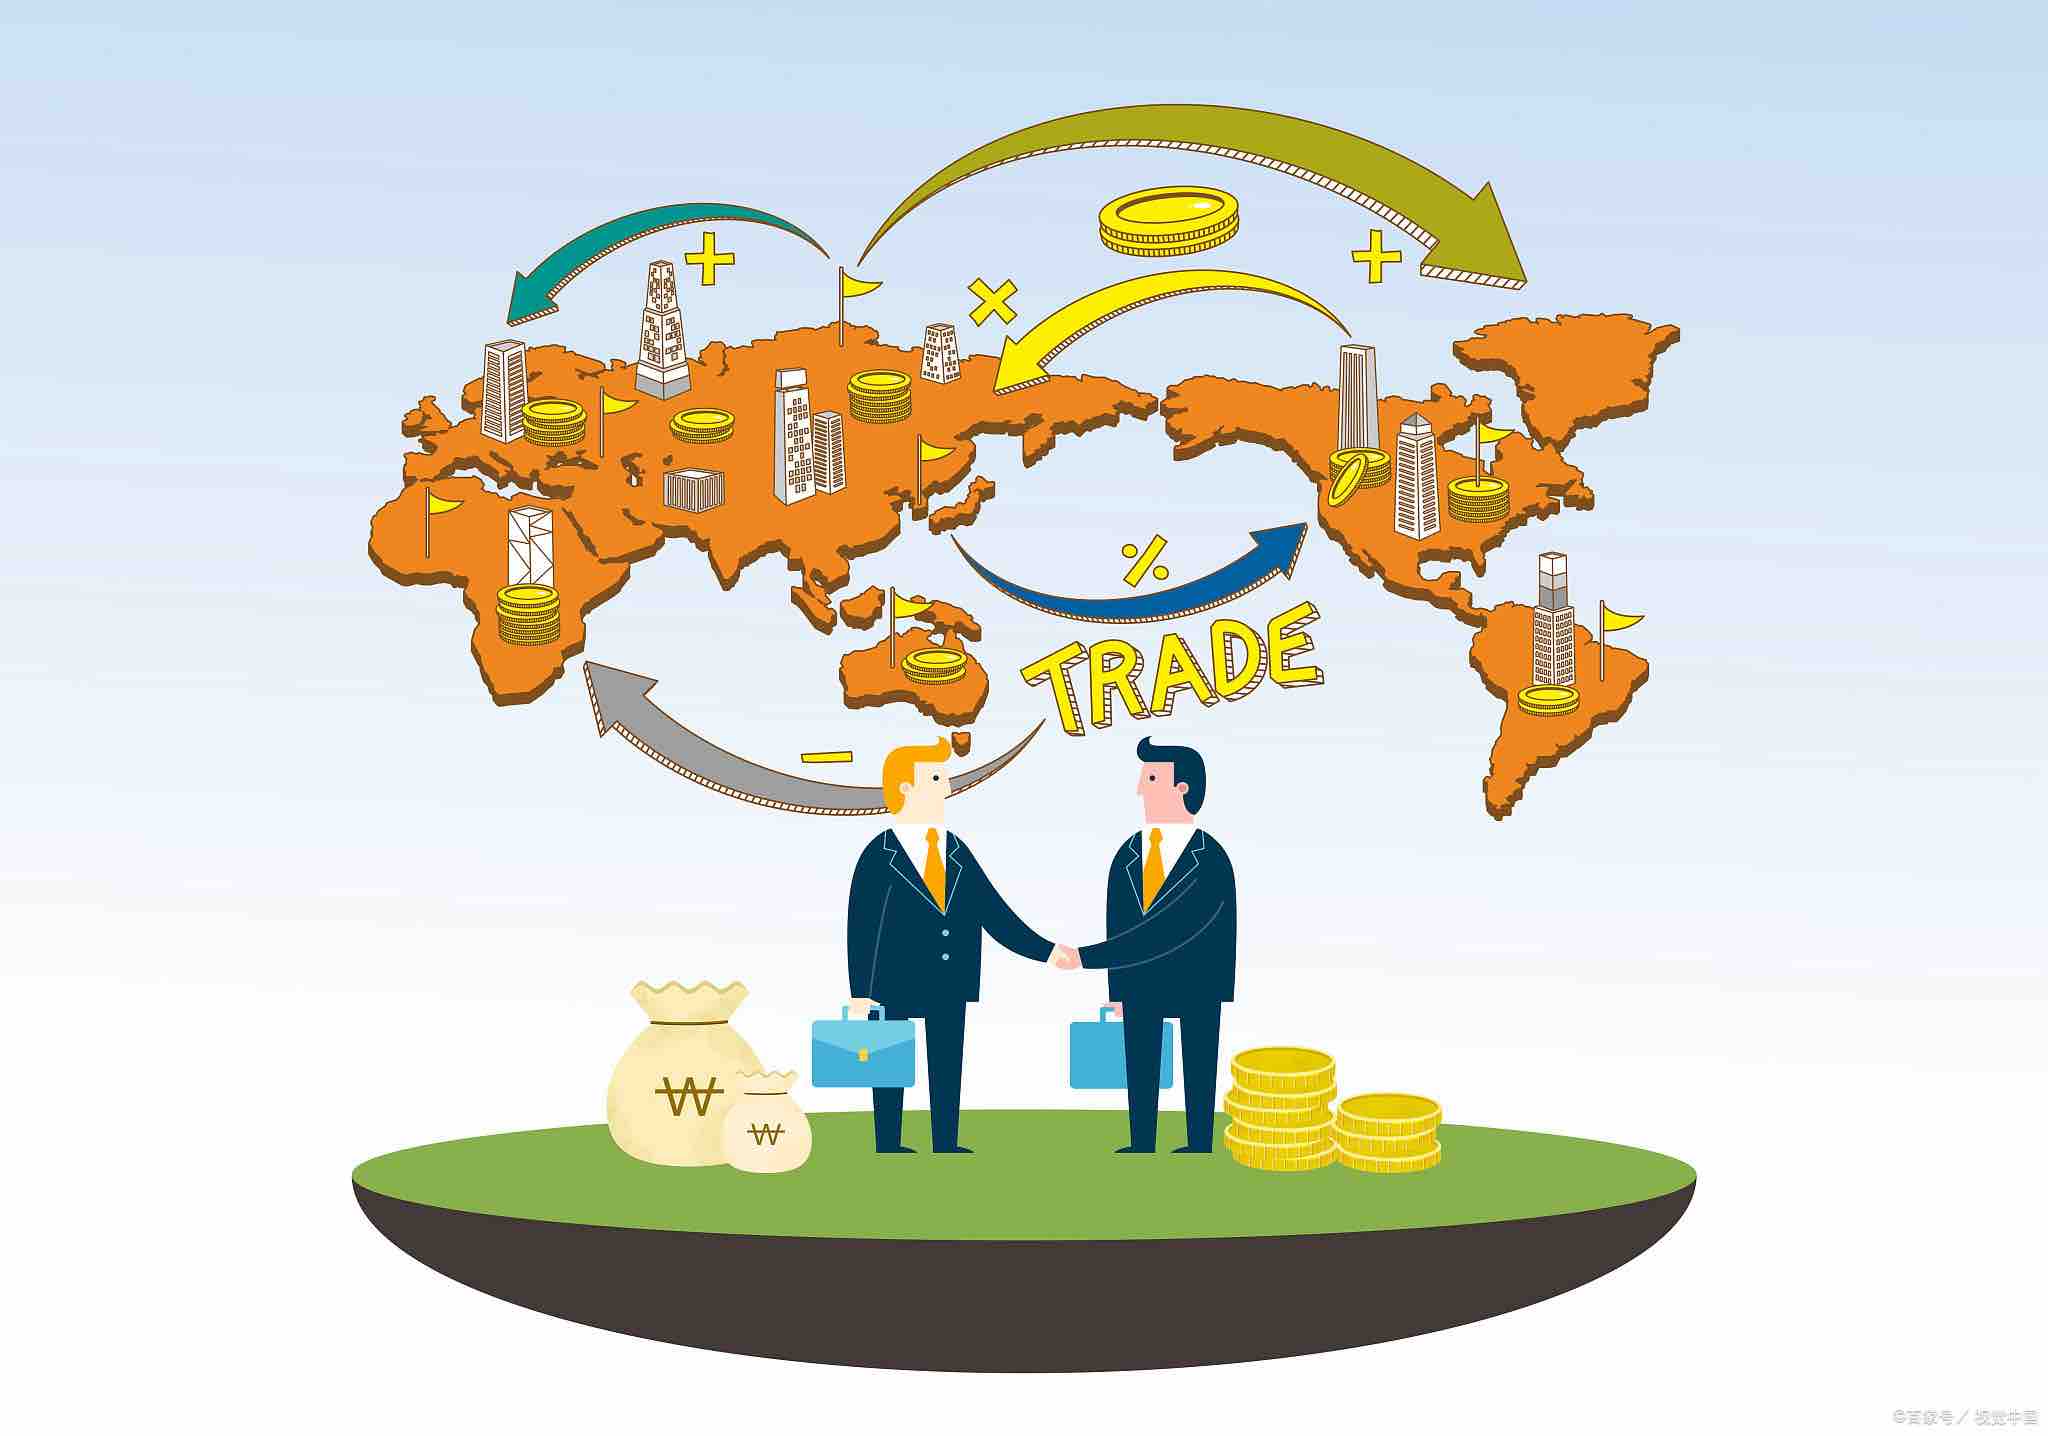 国际贸易风险管理：印度与欧洲四国签署自贸协定 对其取消大部分关税